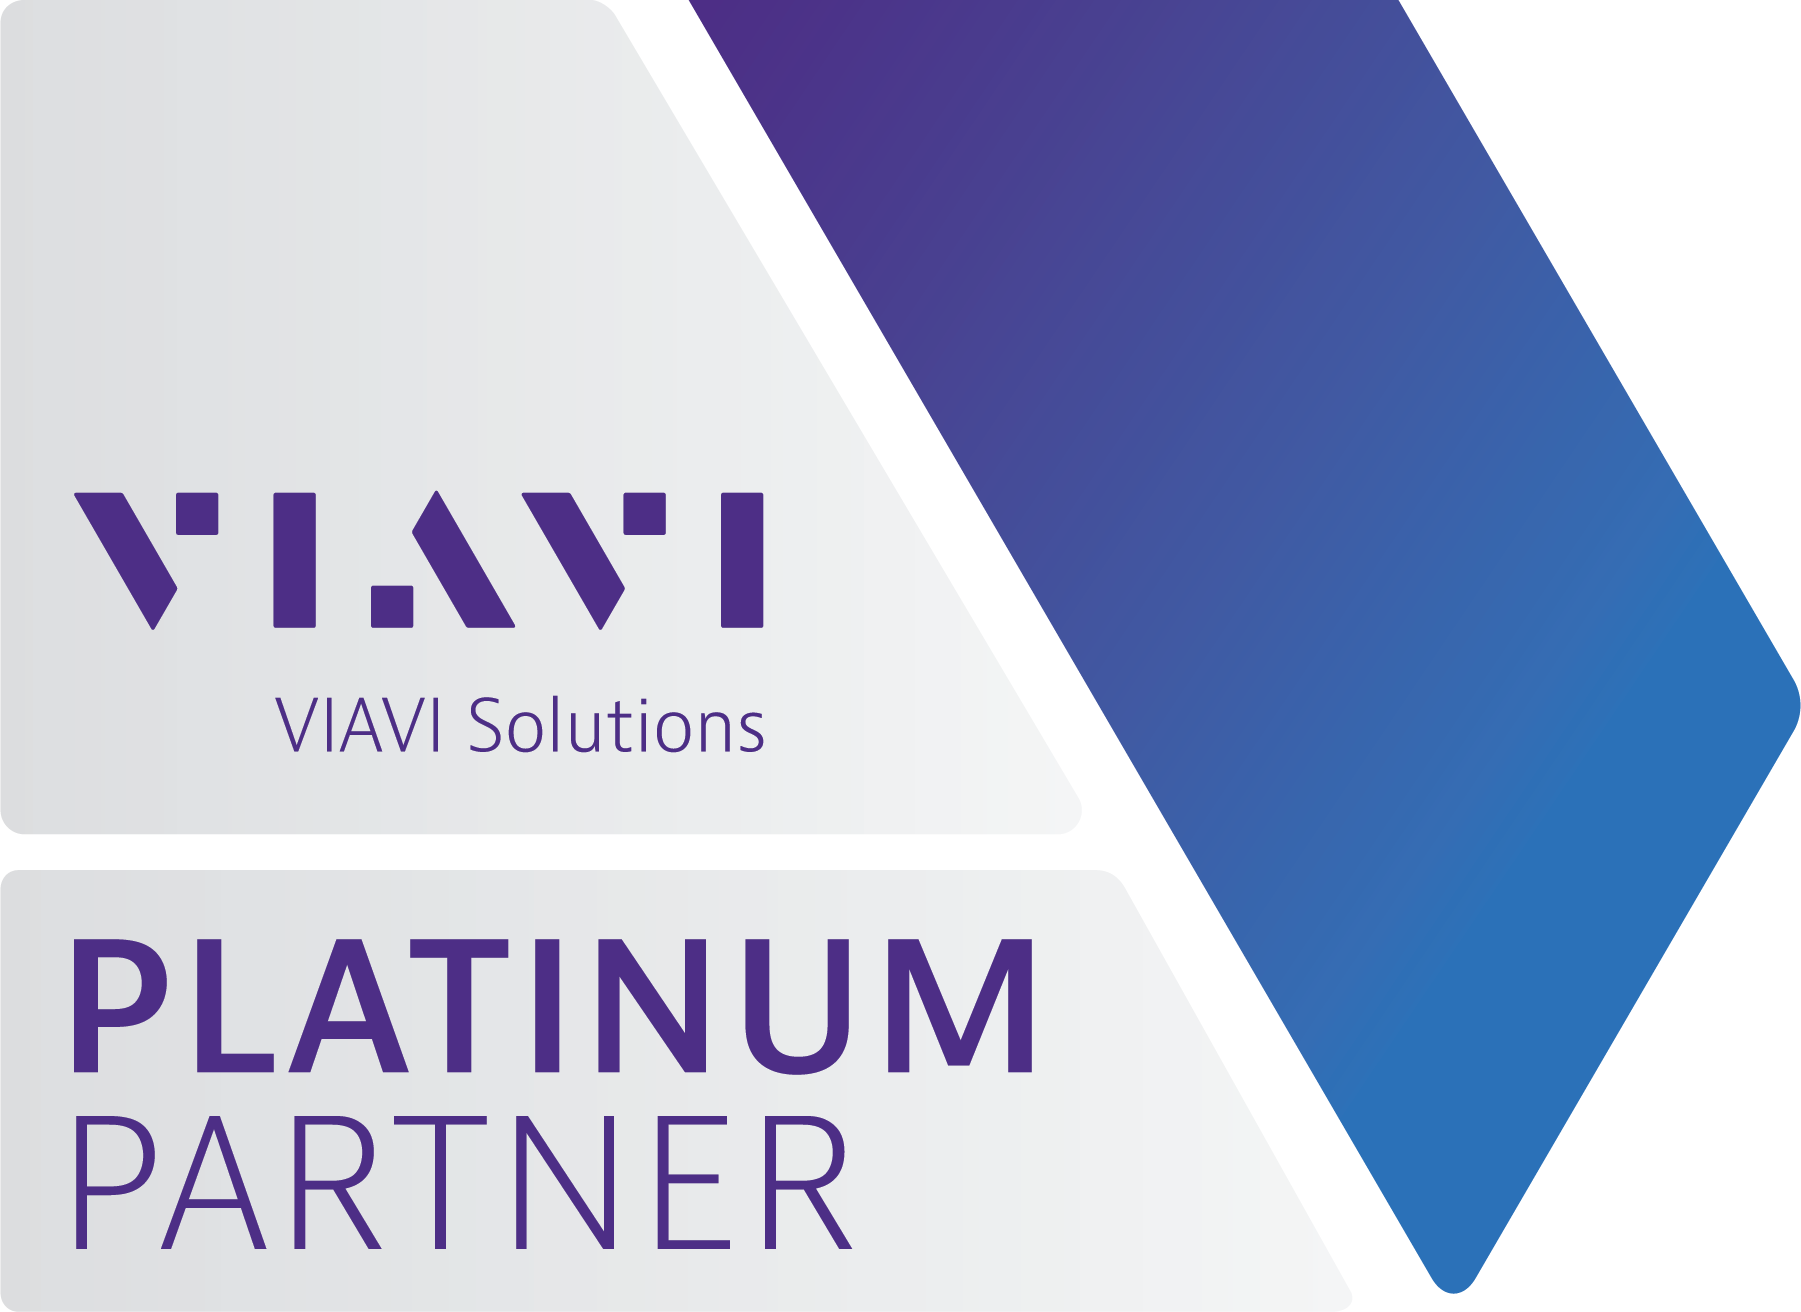 VIAVI Platinum Partner logo